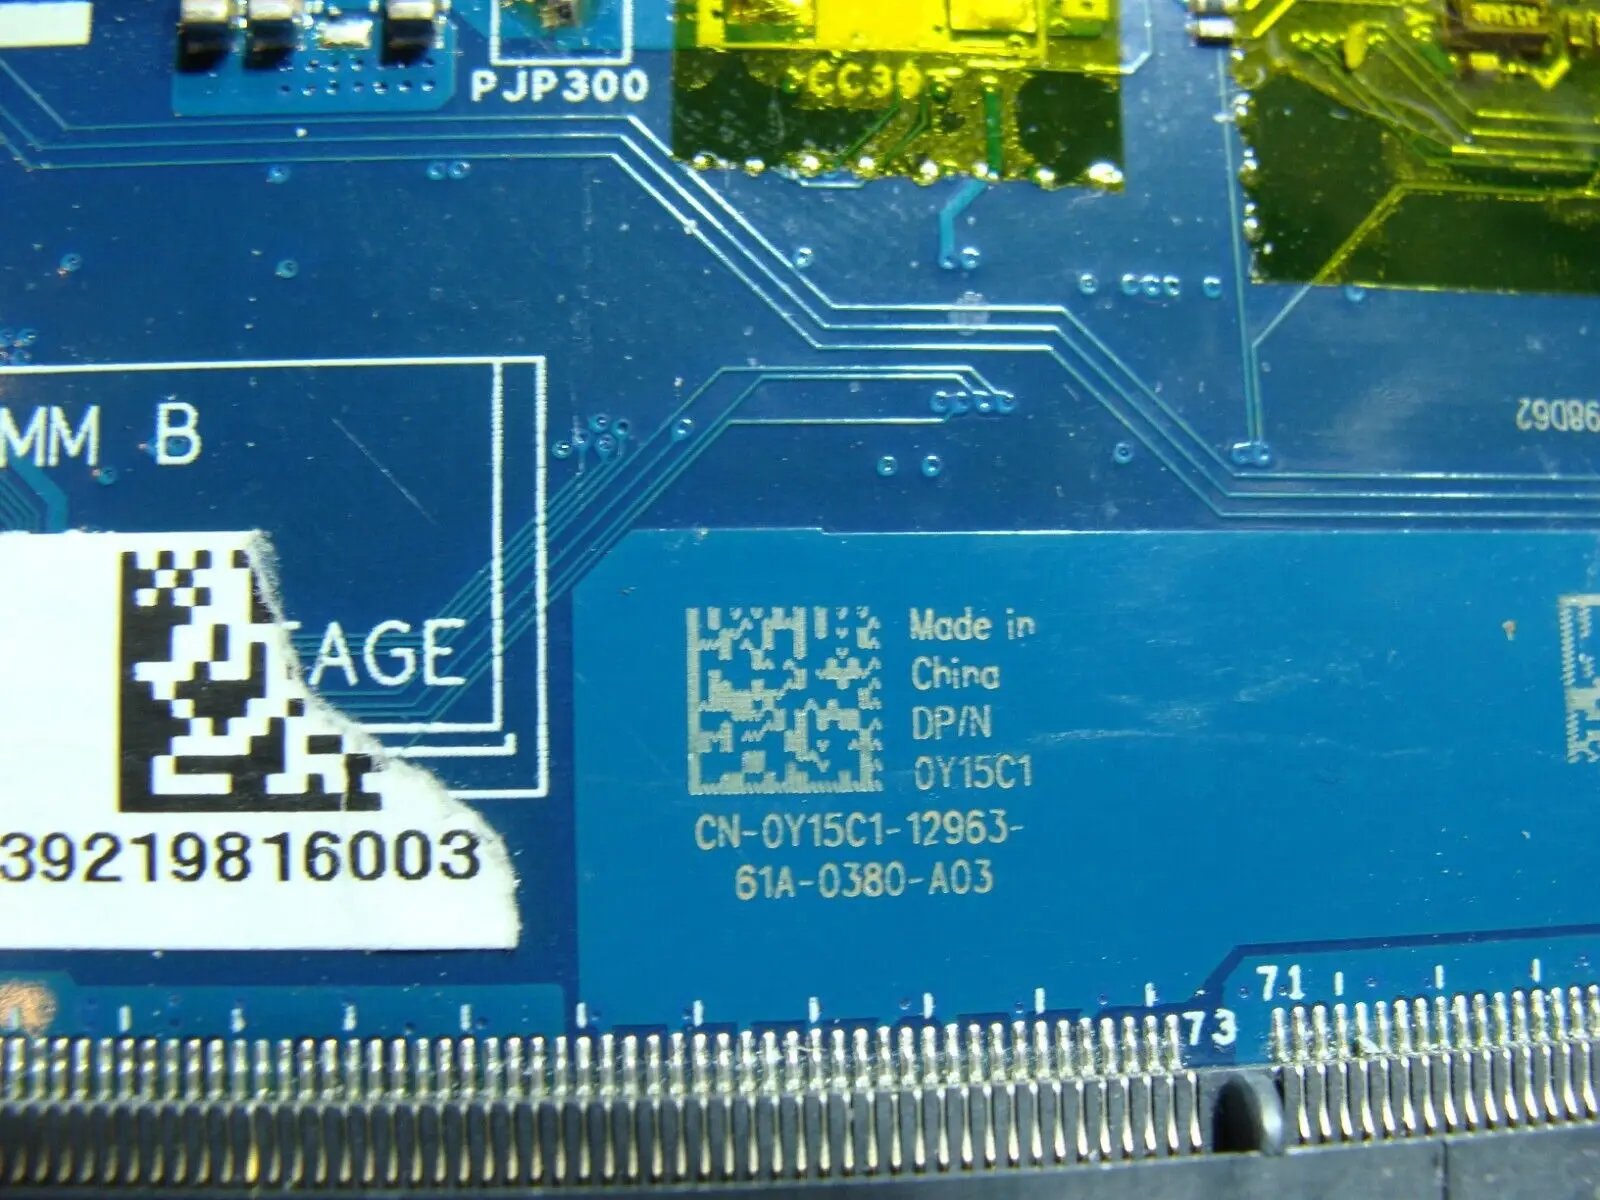 Dell Latitude E7450 14 Intel i7-5600u 2.6Ghz Motherboard LA-A961P Y15C1 AS IS